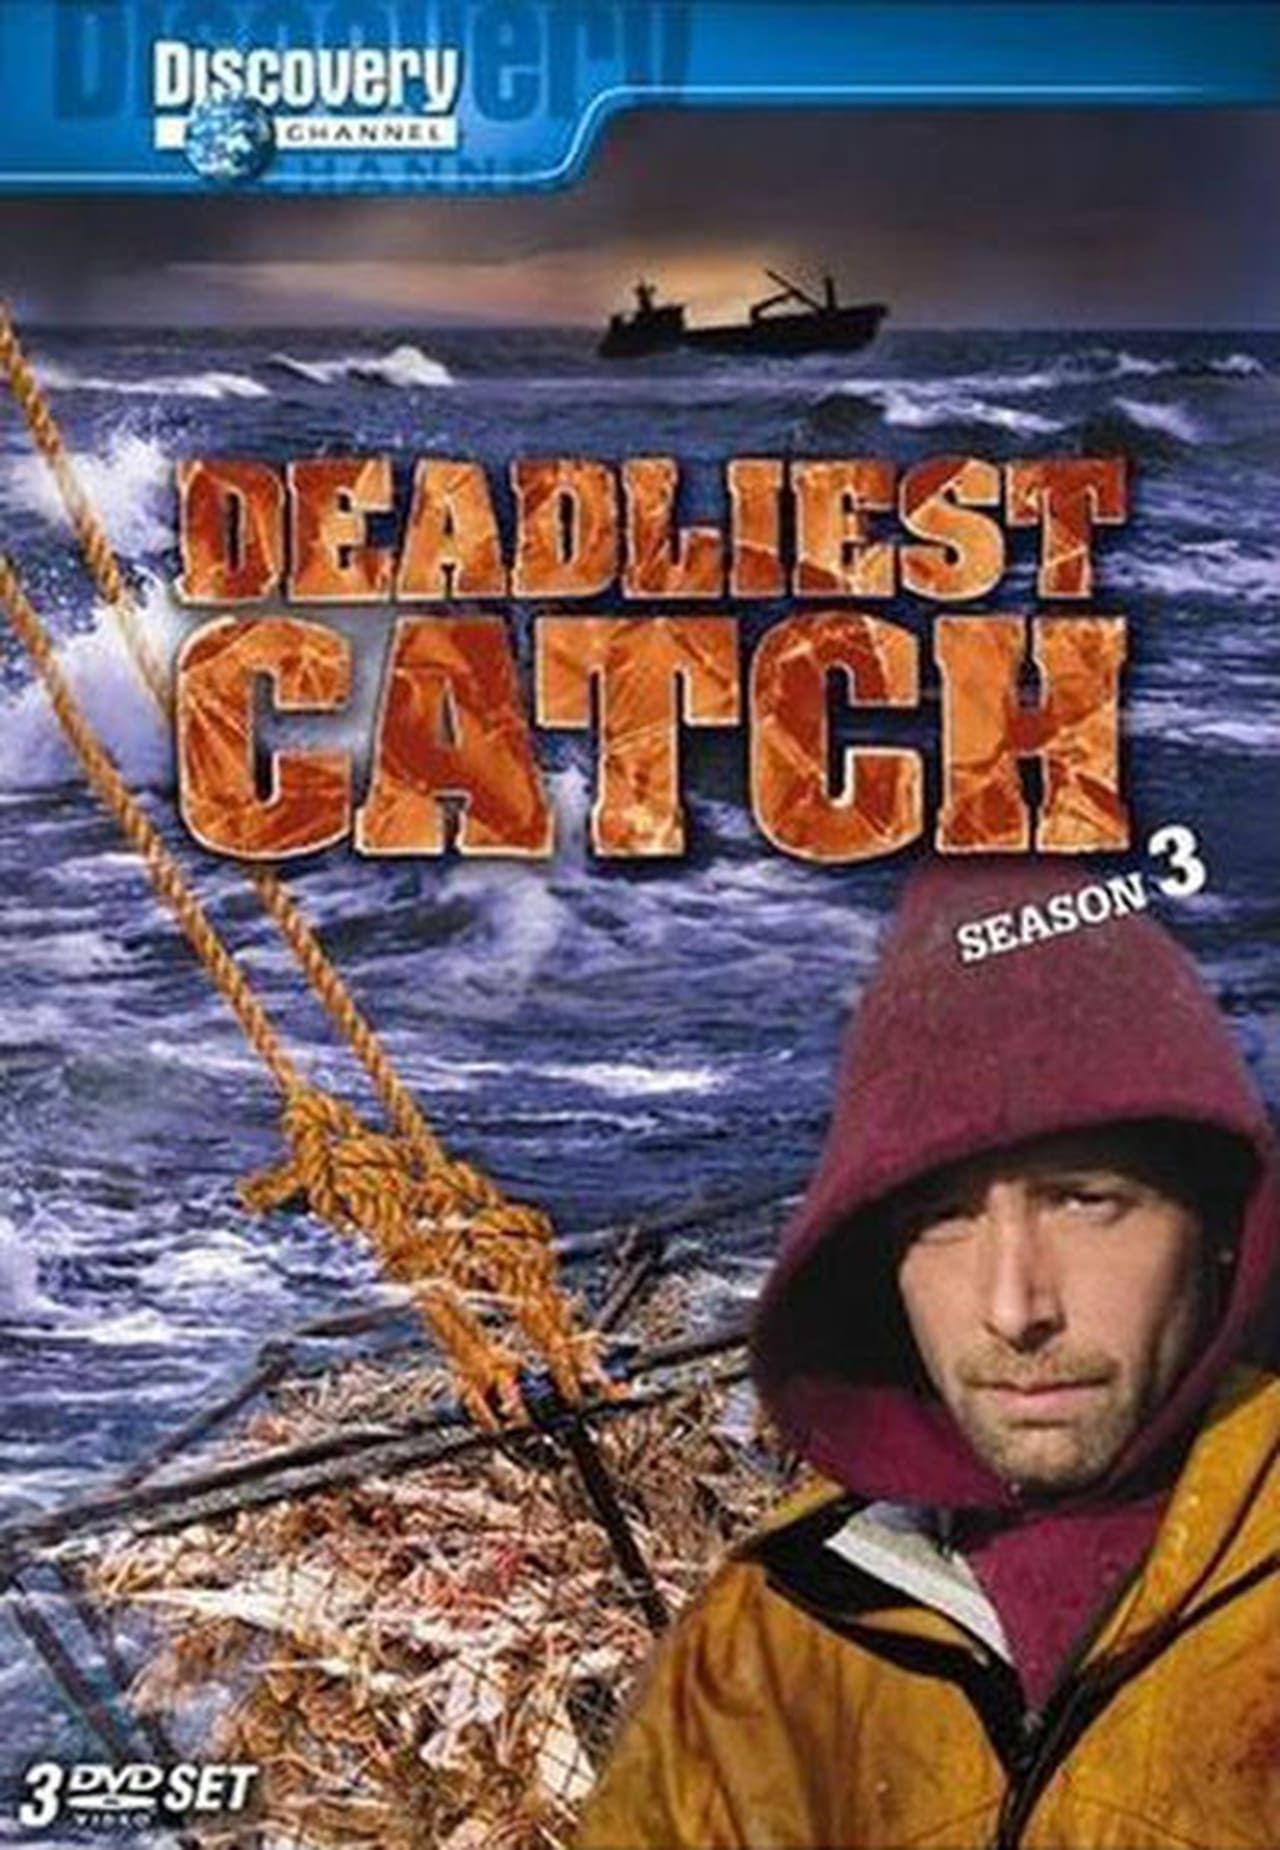 Deadliest Catch Season 3